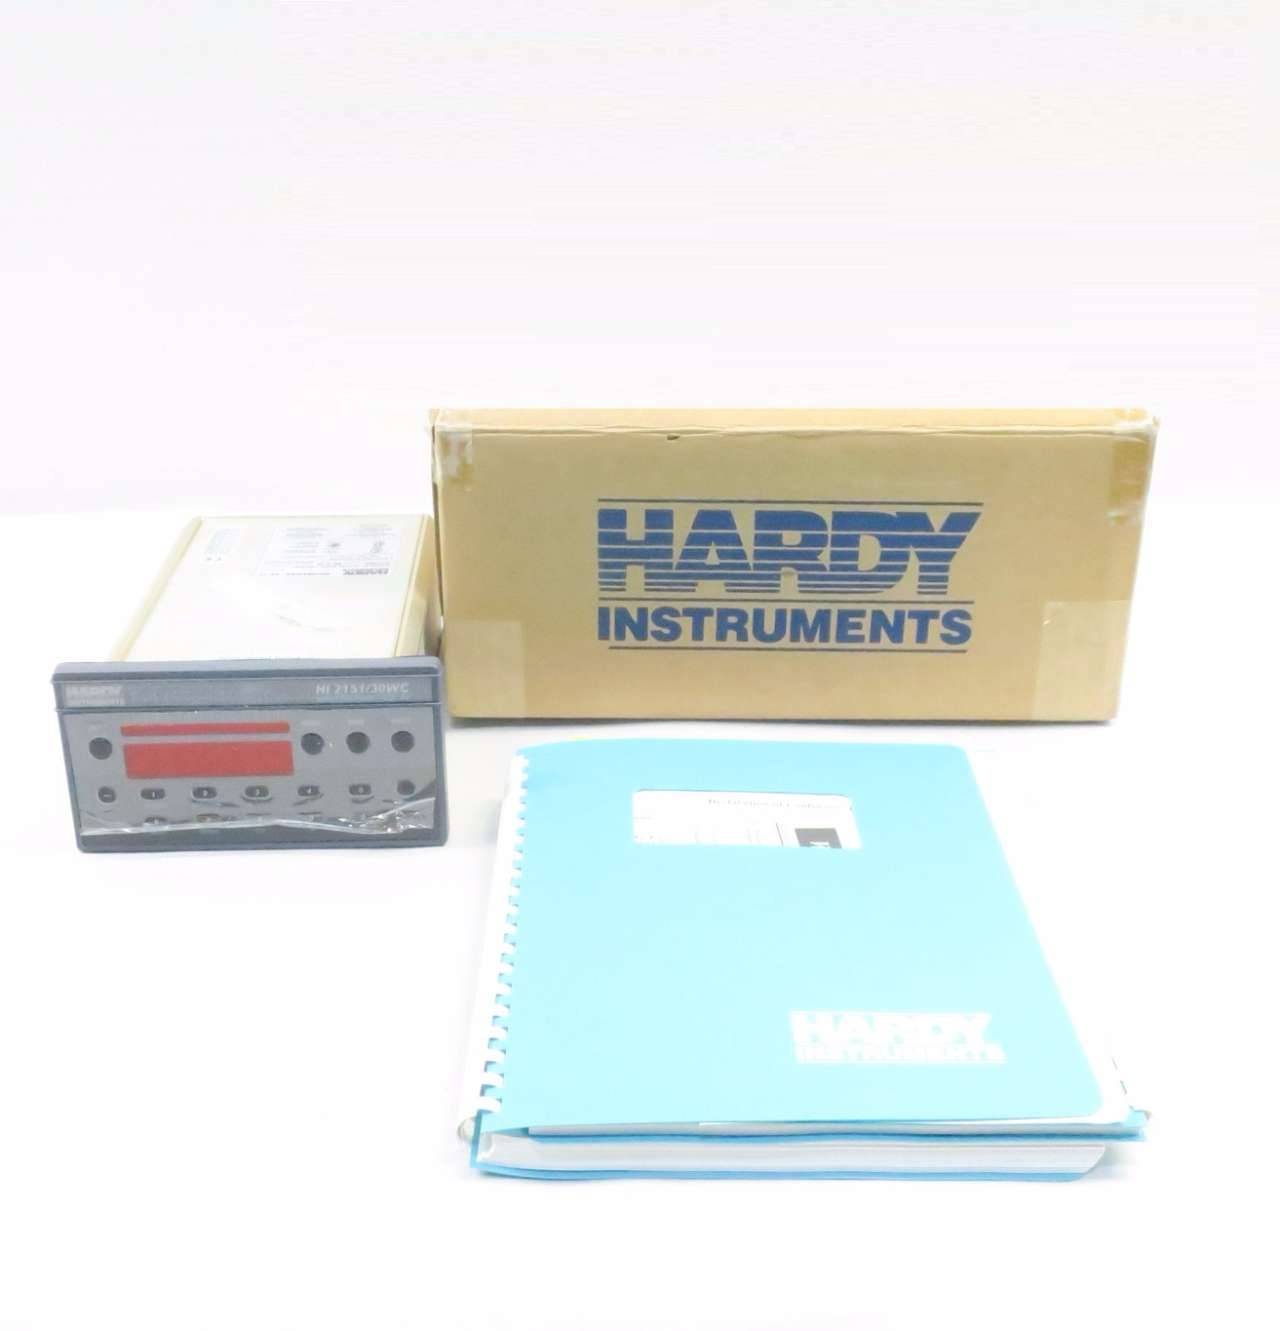 超目玉枠】 Hardy Instruments Weight Controller Model HI 2151 30WC